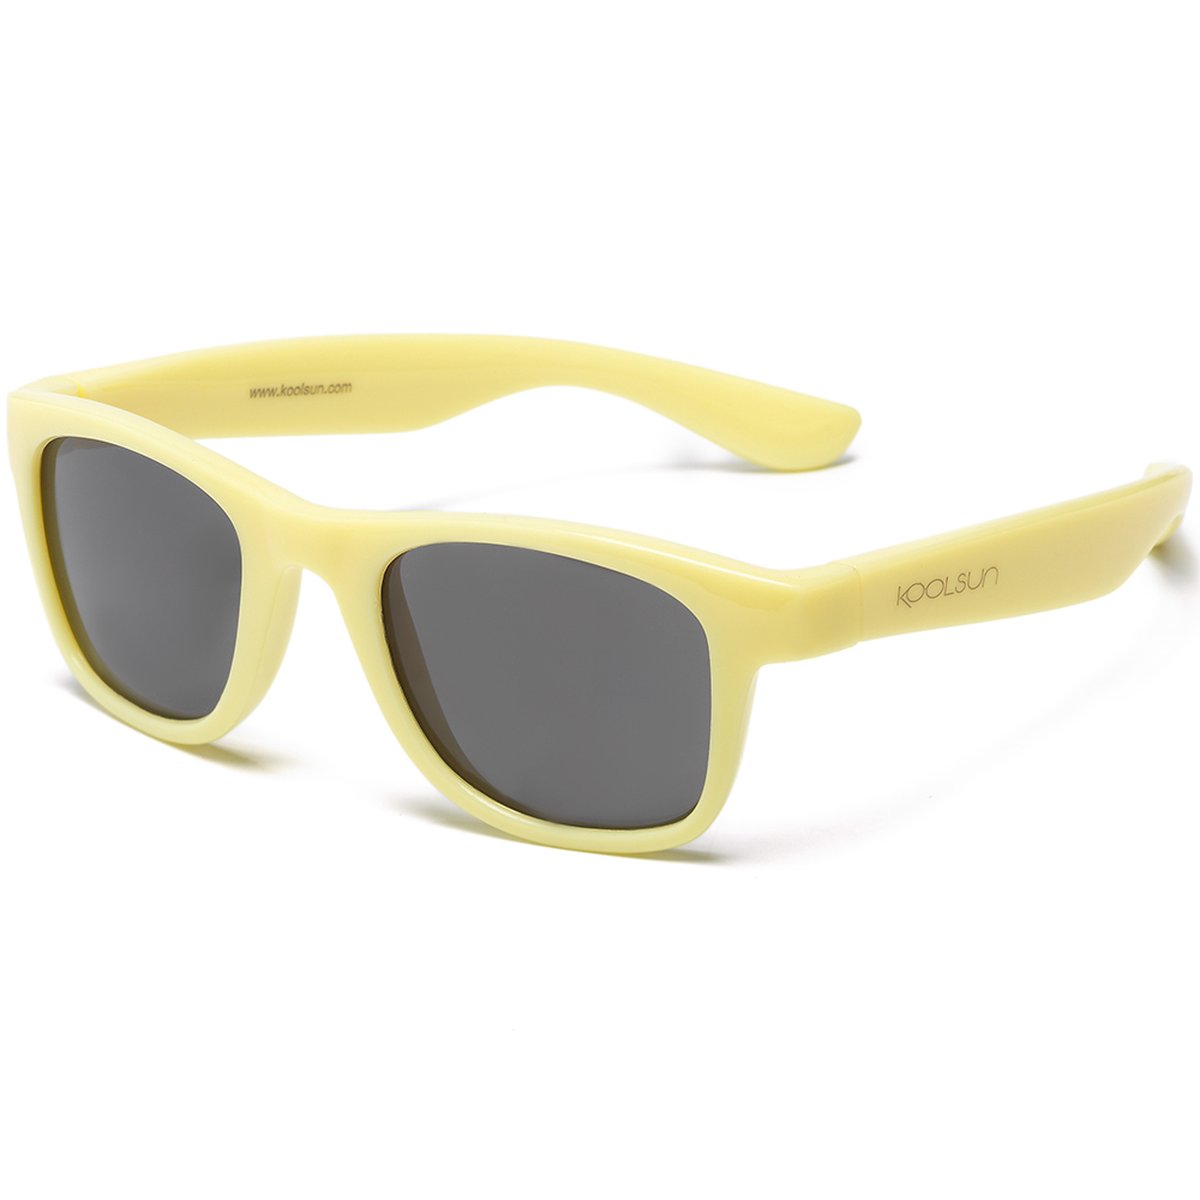 KOOLSUN - Wave - kinder zonnebril - Mellow Geel - 1-5 jaar - UV400 Categorie 3